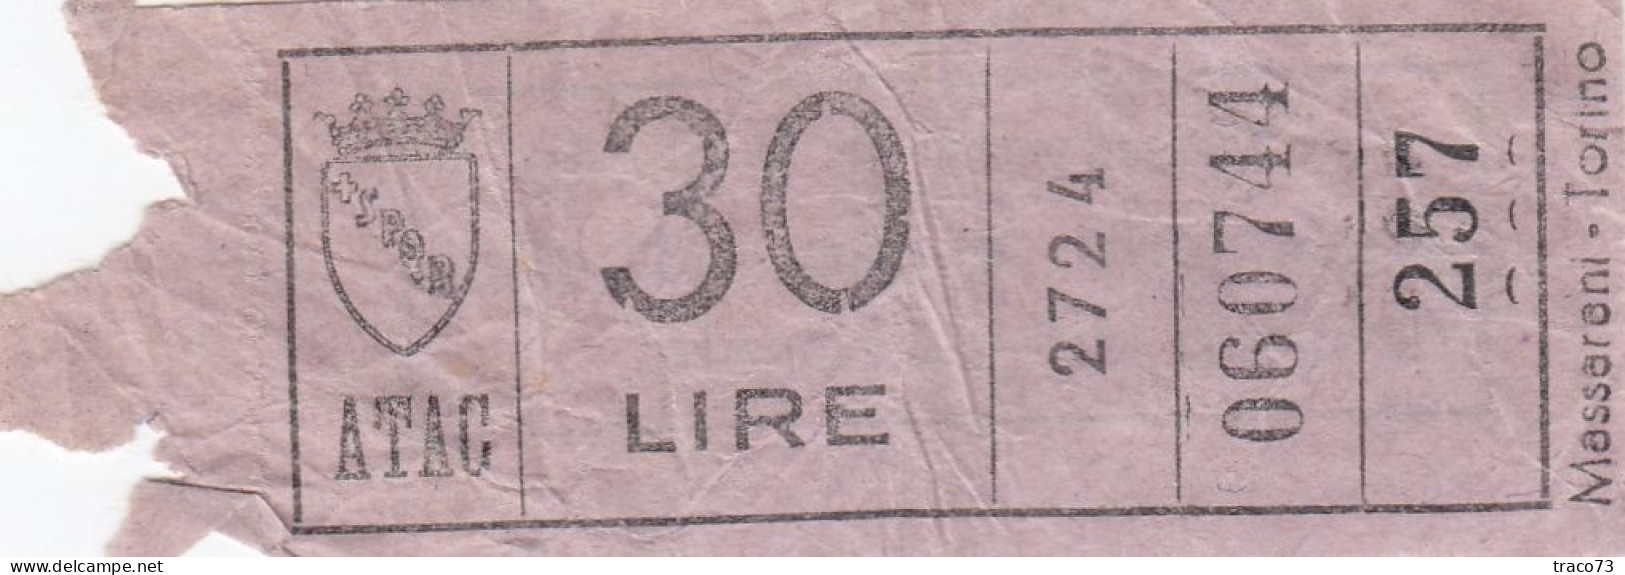 ATAC - ROMA  _ Anni '50-'60 /  Ticket  _ Biglietto Da Lire 30 - Europa